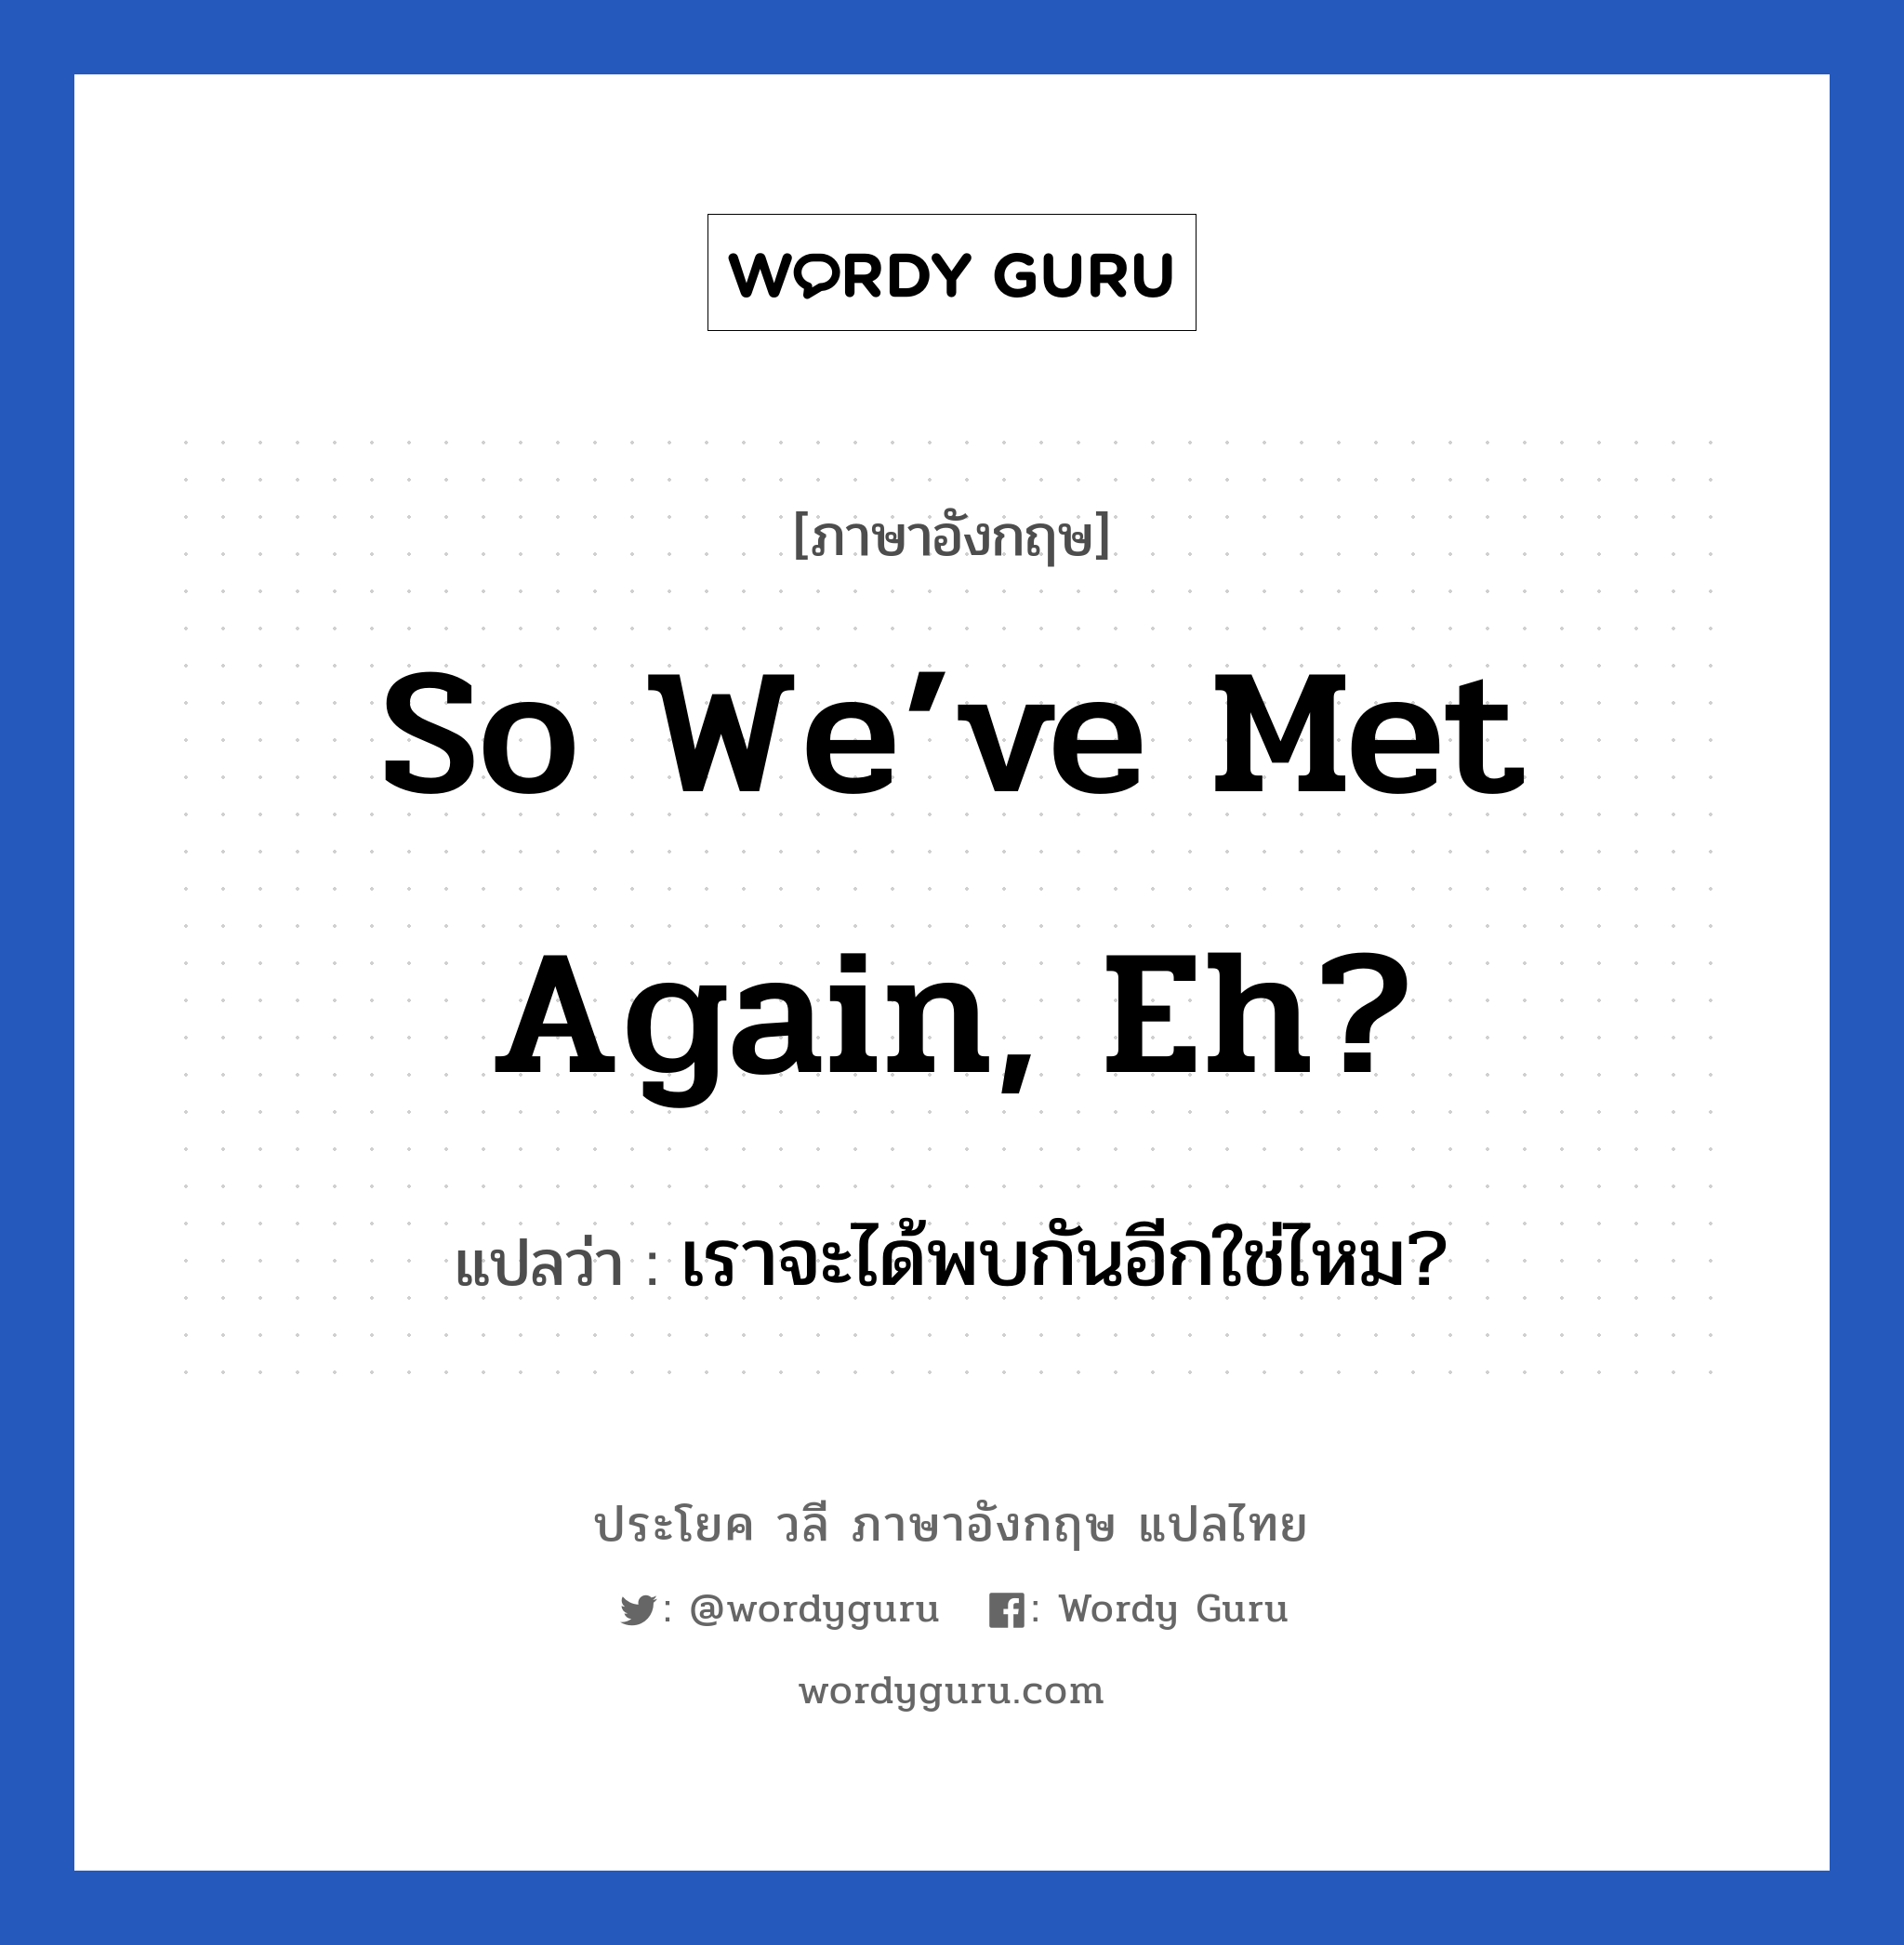 So we’ve met again, eh? แปลว่า?, วลีภาษาอังกฤษ So we’ve met again, eh? แปลว่า เราจะได้พบกันอีกใช่ไหม?